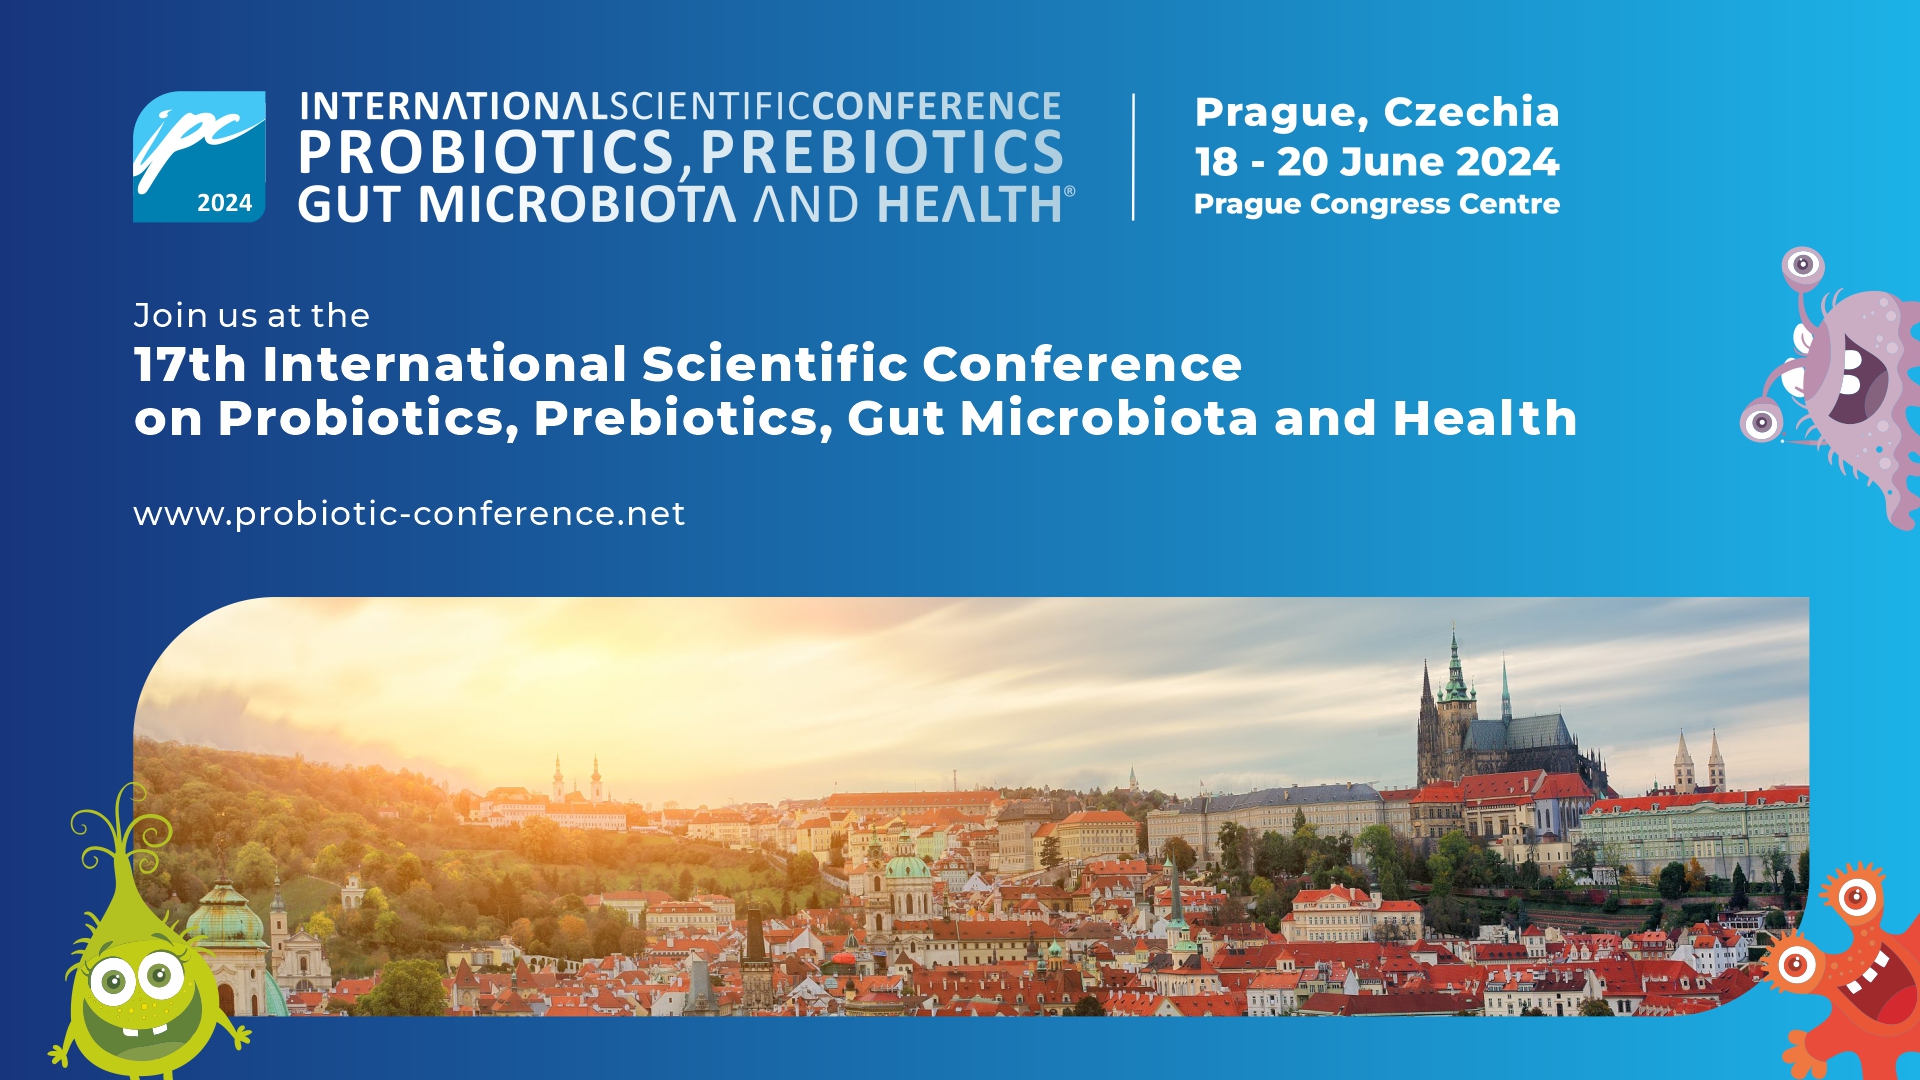 Medzinarodna vedecka konferencia o probiotikach prebiotikach a crevnom mikrobiome IPC